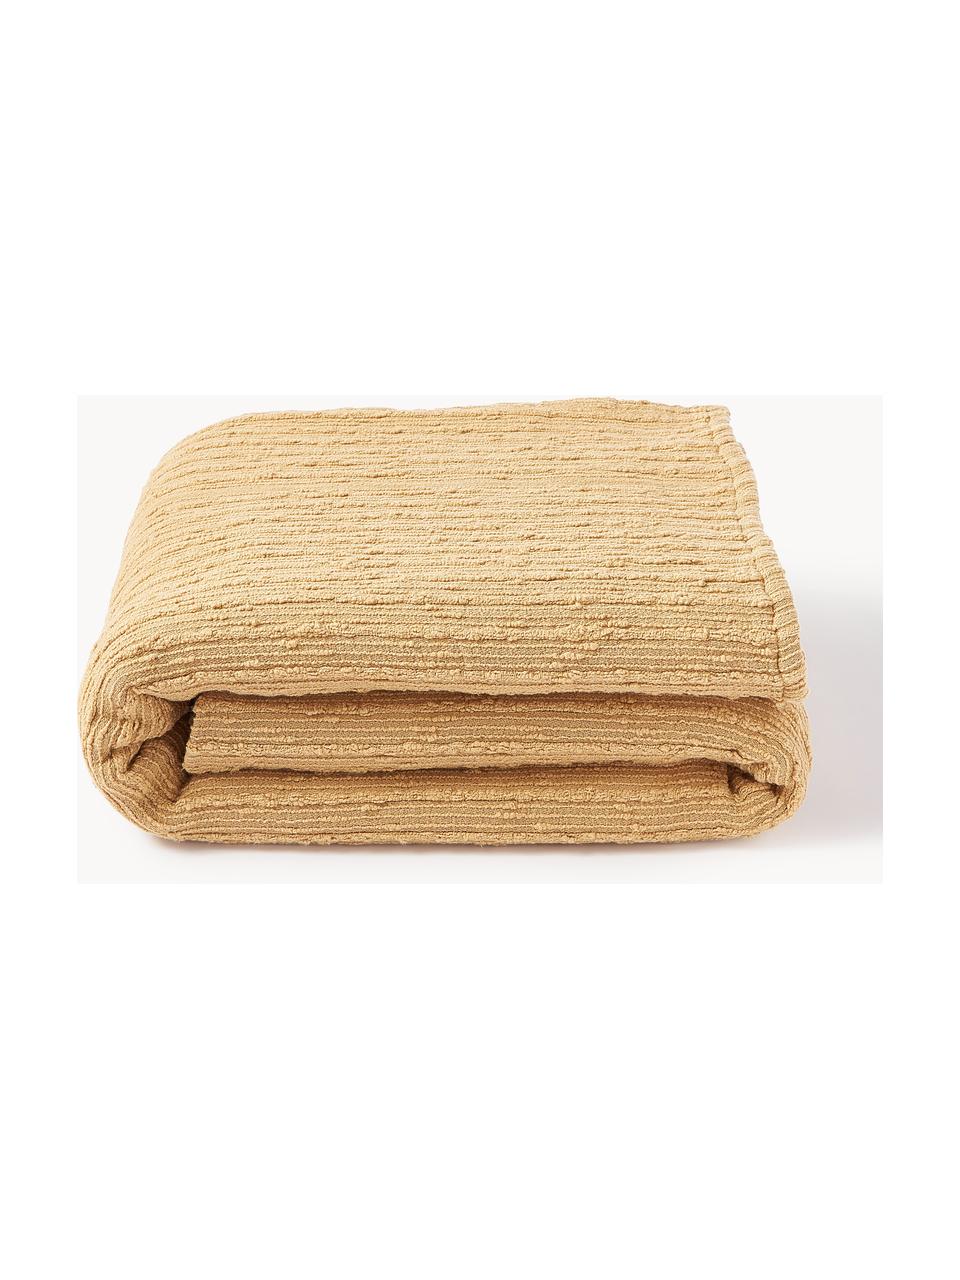 Couvre-lit en bouclette Thomassin, Tissu bouclette (95 % coton, 5 % polyester)

La bouclette est une matière qui se caractérise par sa texture aux courbes irrégulières. La surface caractéristique est créée par des boucles tissées de fils différents qui confèrent au tissu une structure unique. La structure bouclée a un effet à la fois isolant et moelleux, ce qui rend le tissu particulièrement douillet

Le matériau est certifié STANDARD 100 OEKO-TEX®, 4265CIT, CITEVE, Jaune moutarde, larg. 230 x long. 260 cm (pour lits jusqu'à 180 x 200 cm)